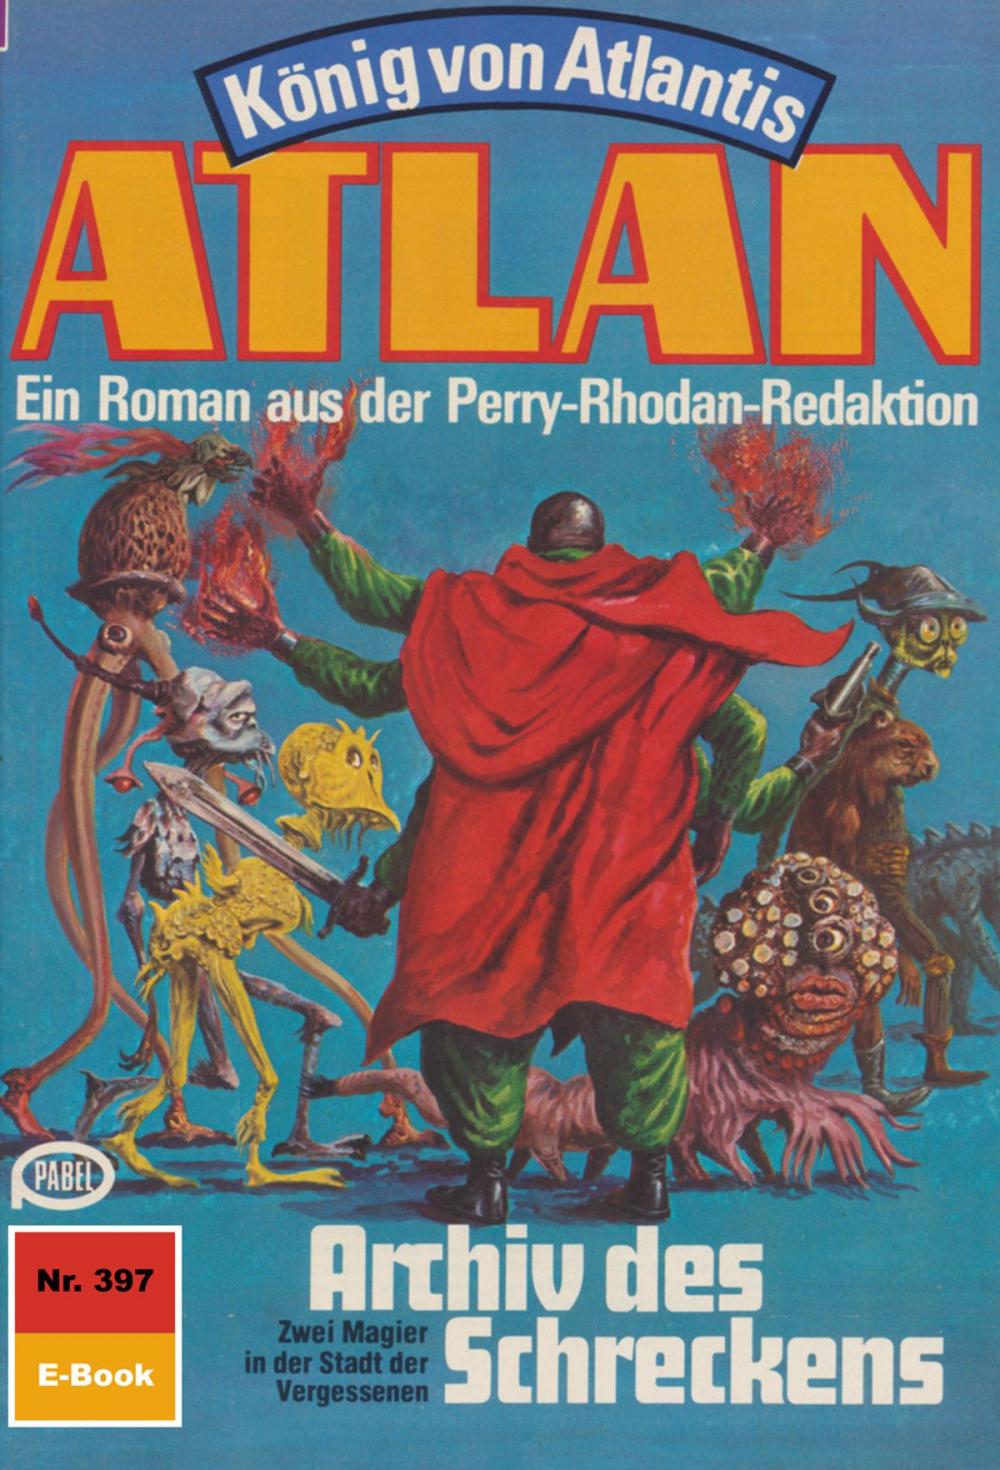 Big bigCover of Atlan 397: Archiv des Schreckens